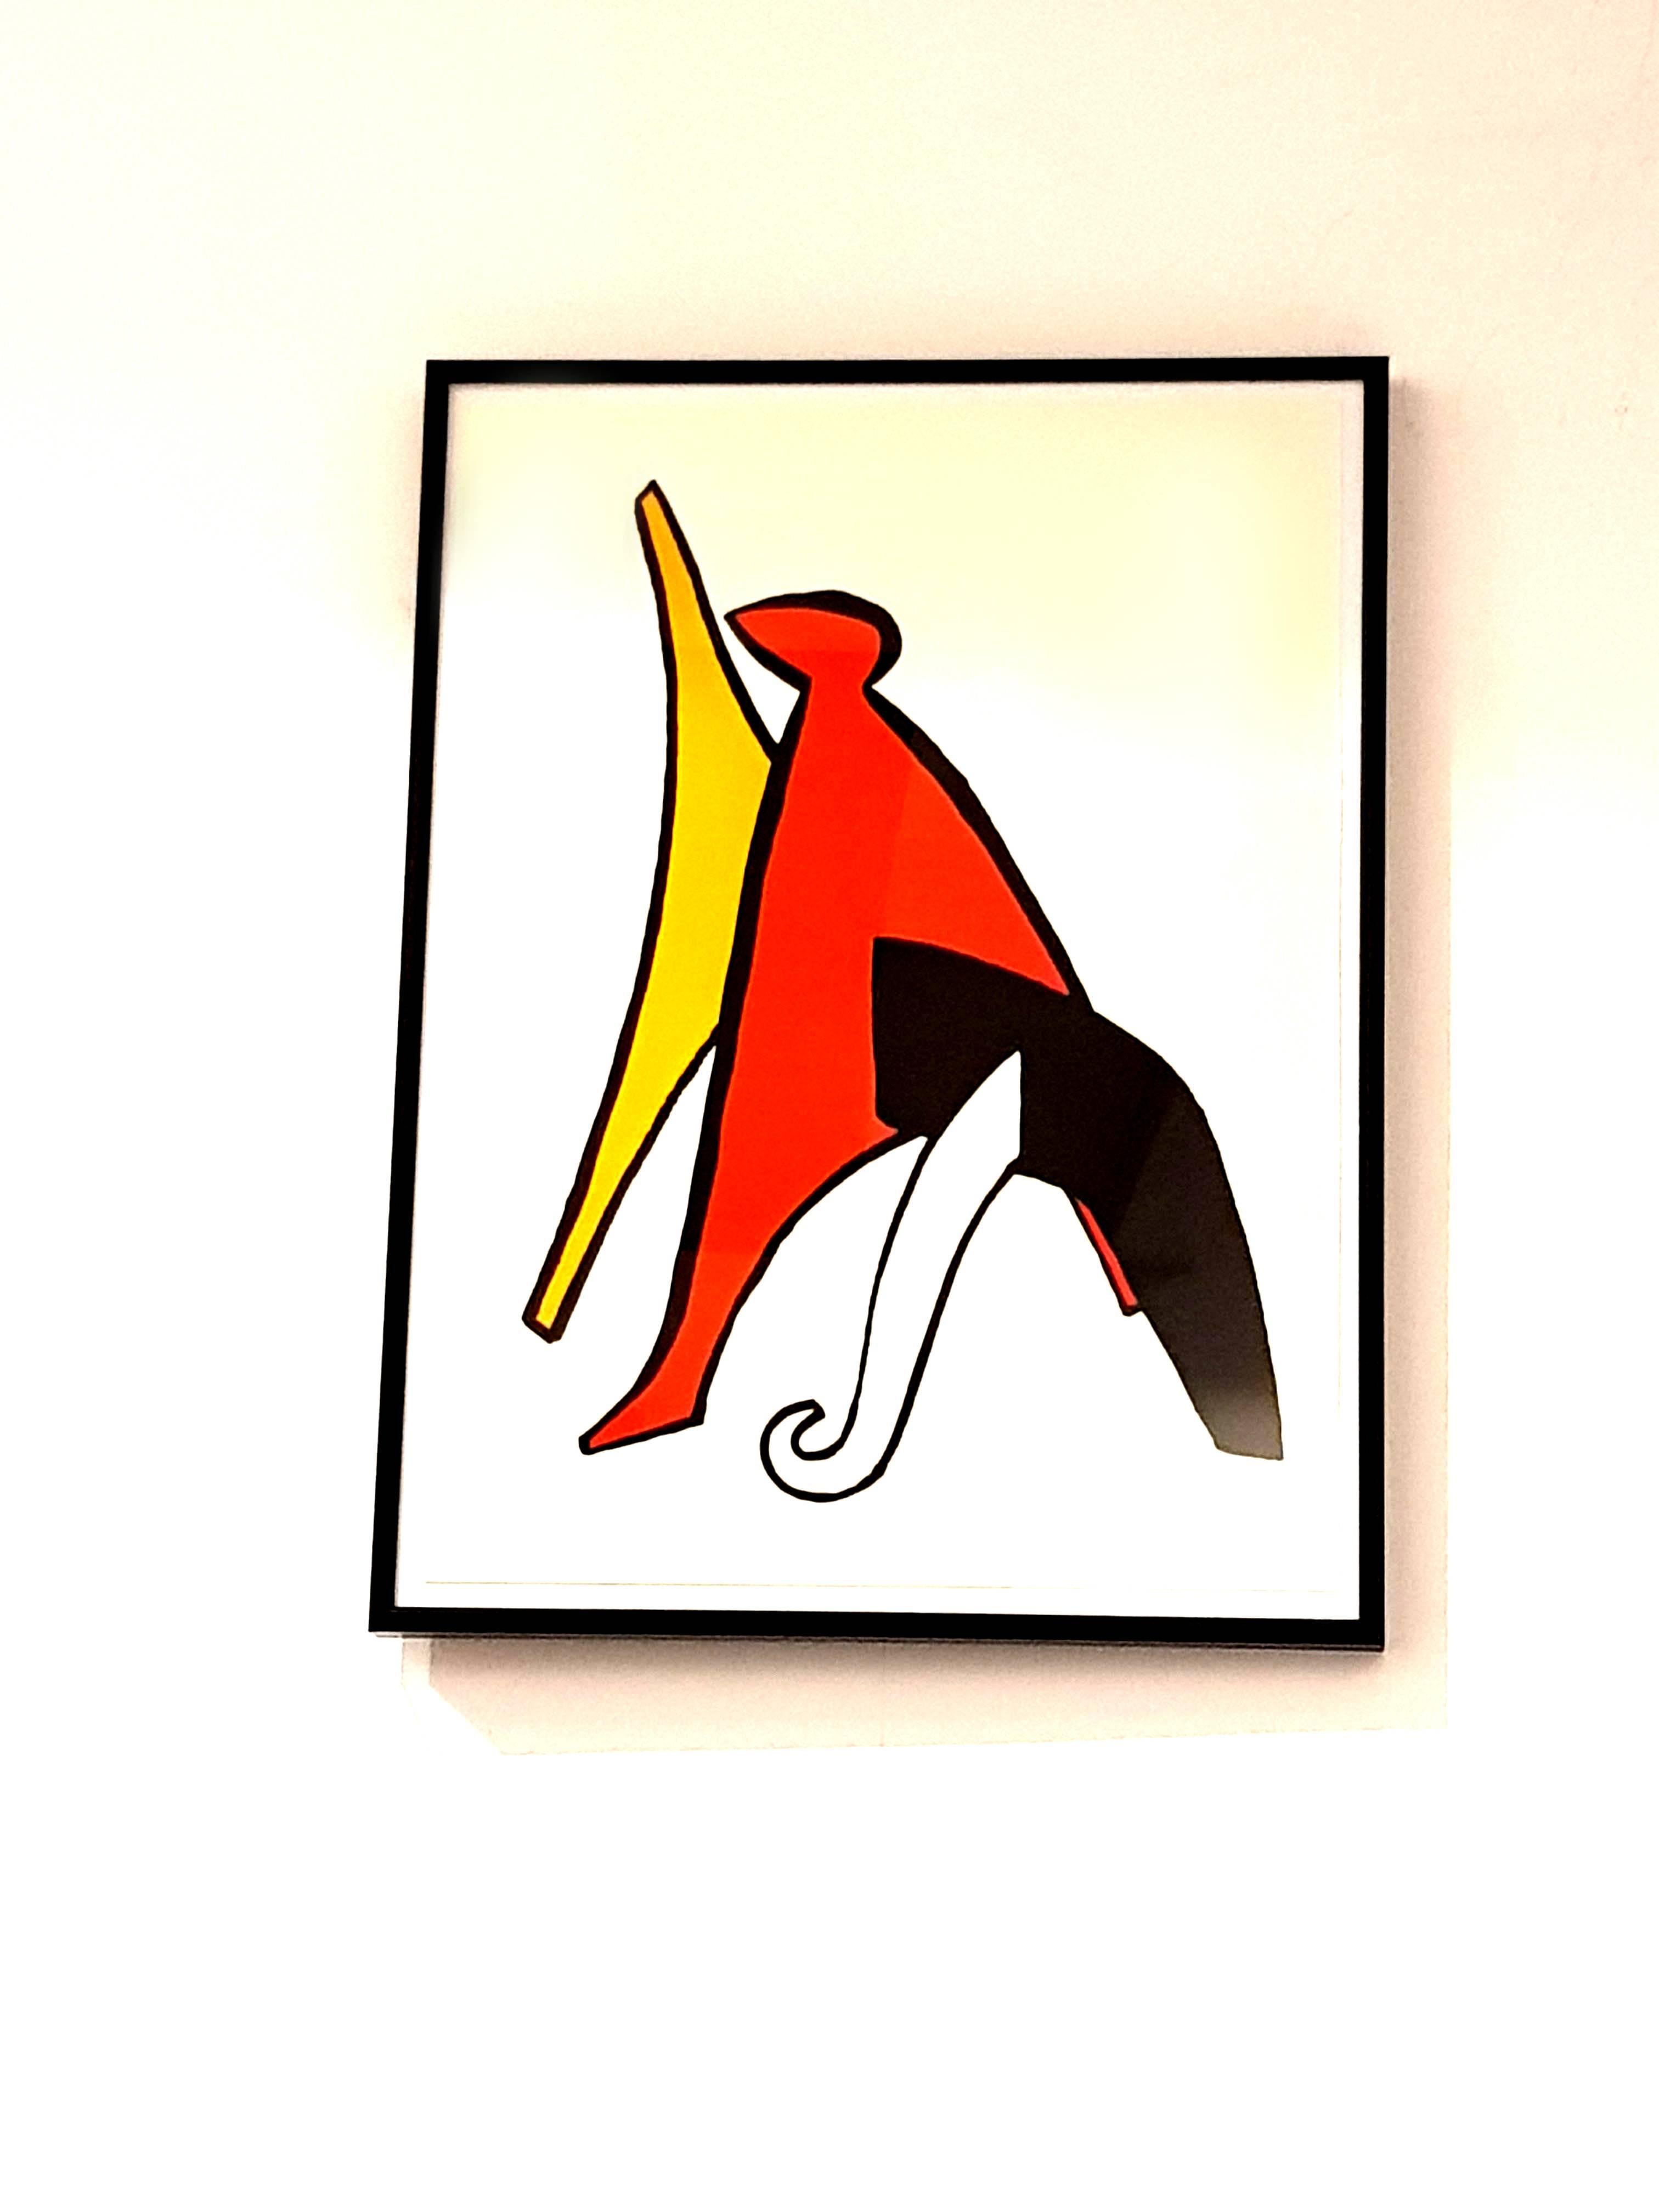 Alexander Calder - Original Lithograph - Behind the Mirror
1 Original lithograph created in 1976 
Framed
Dimensions: 38 x 28 cm
Source: Derrière le miroir (DLM), n°221, 1976

Alexander Calder (1898 - 1976)

The American artist Alexander Calder was